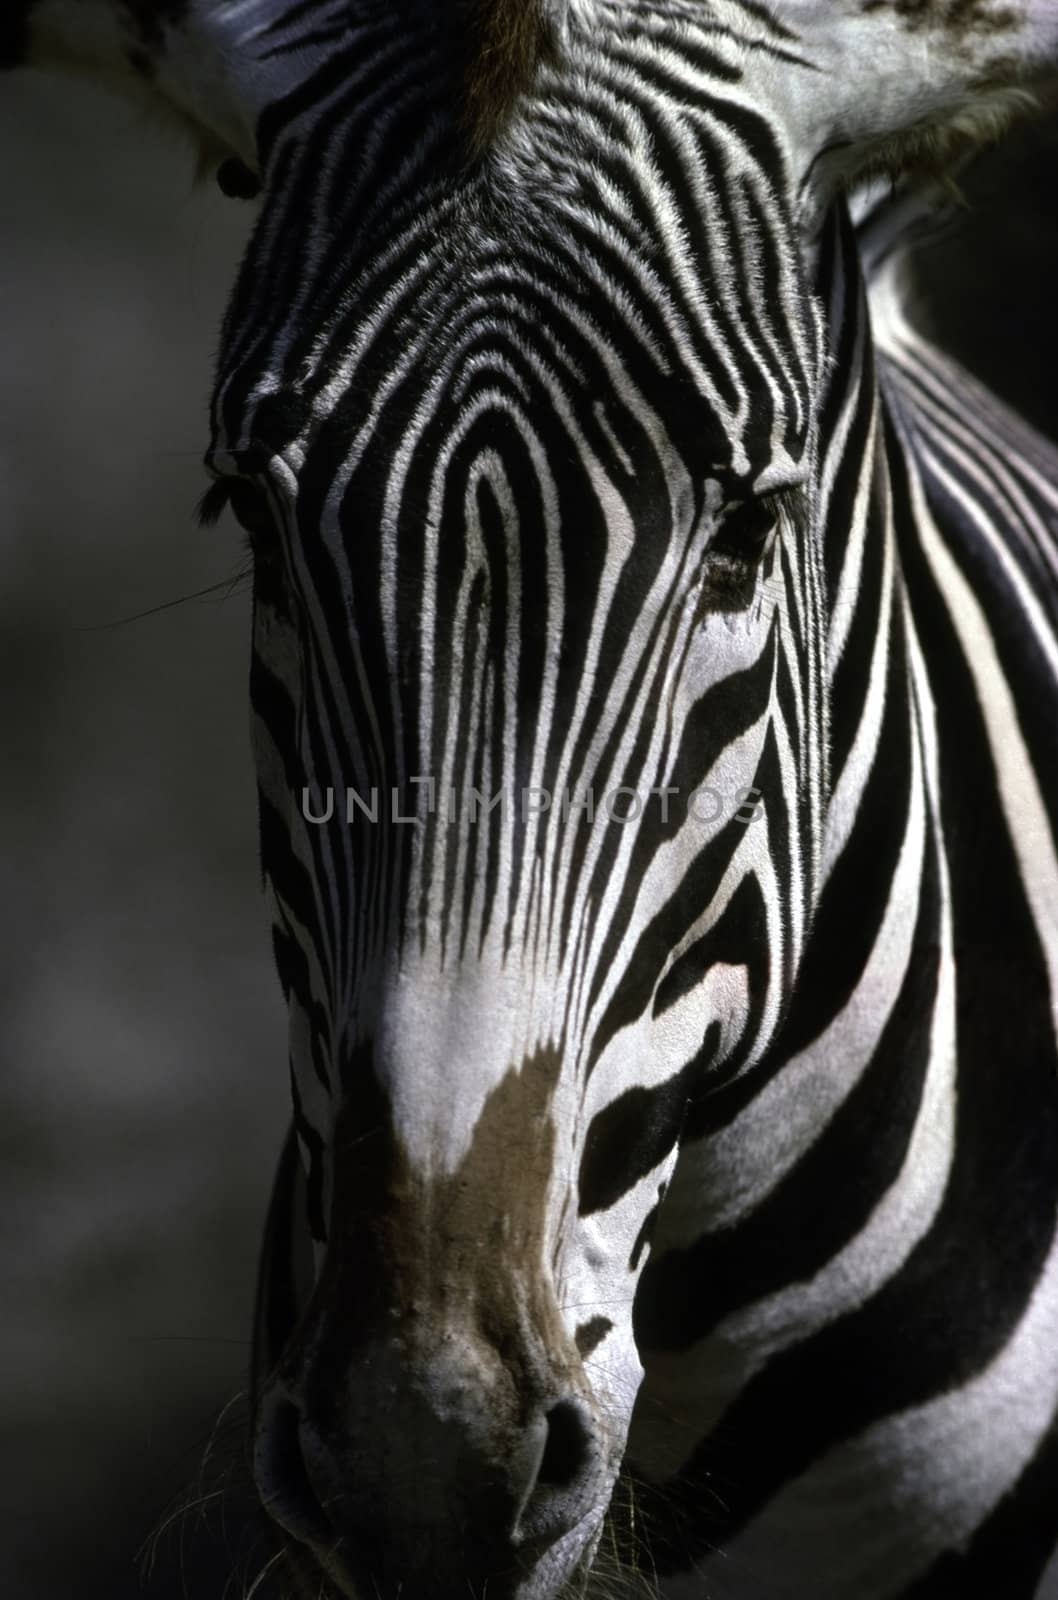 Zebra by jol66